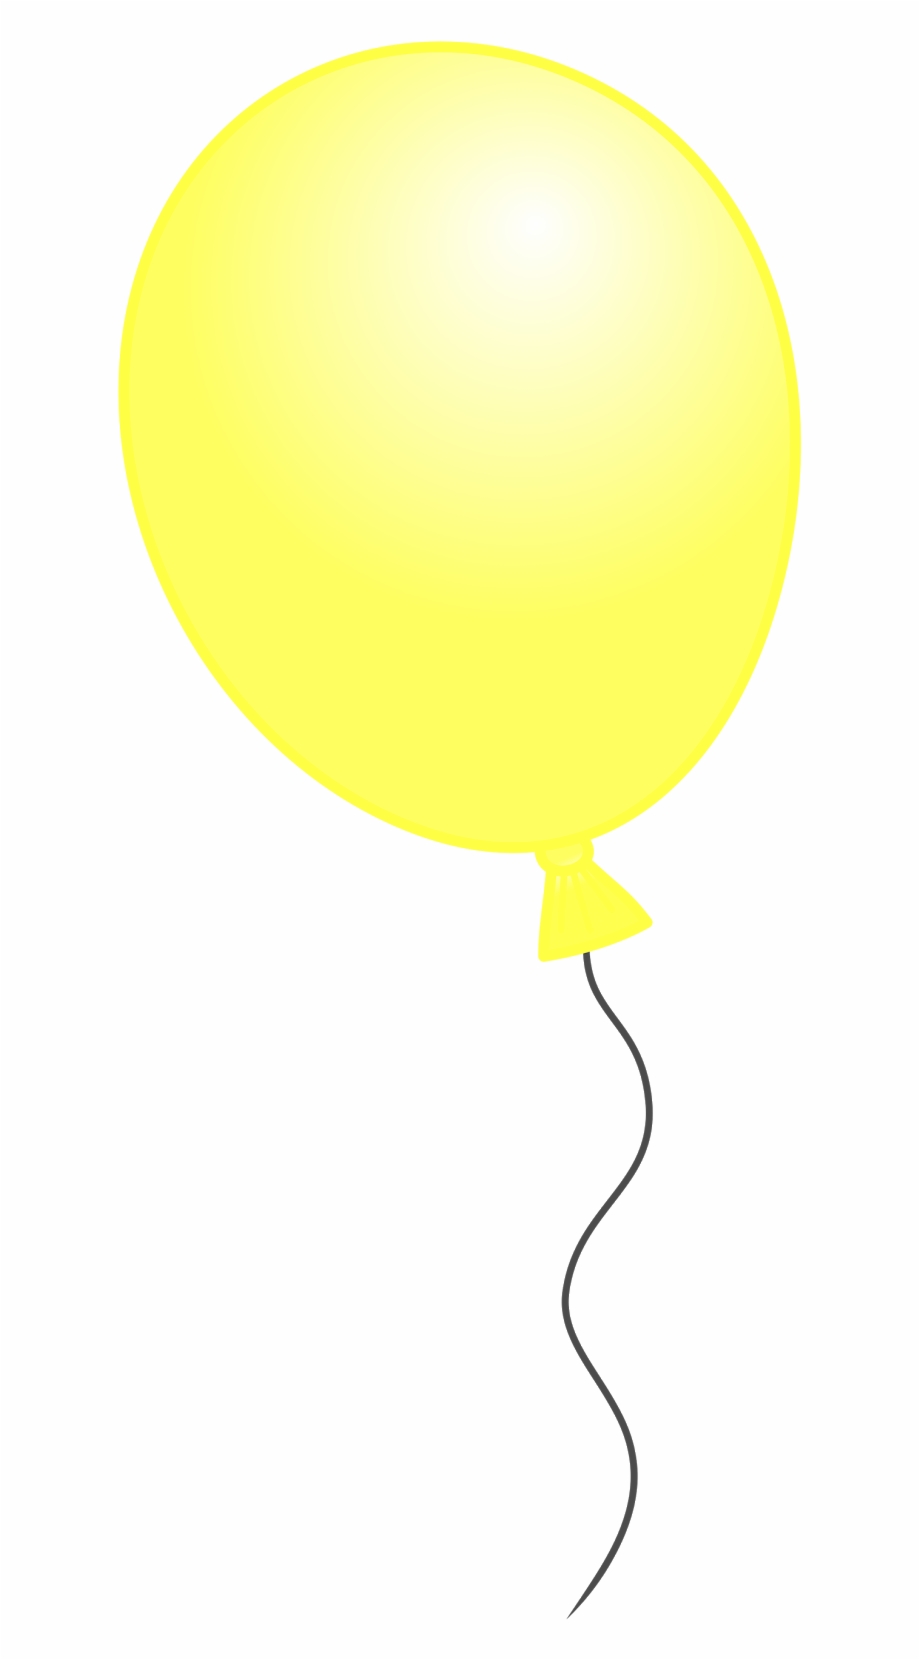 balloon clipart yellow
